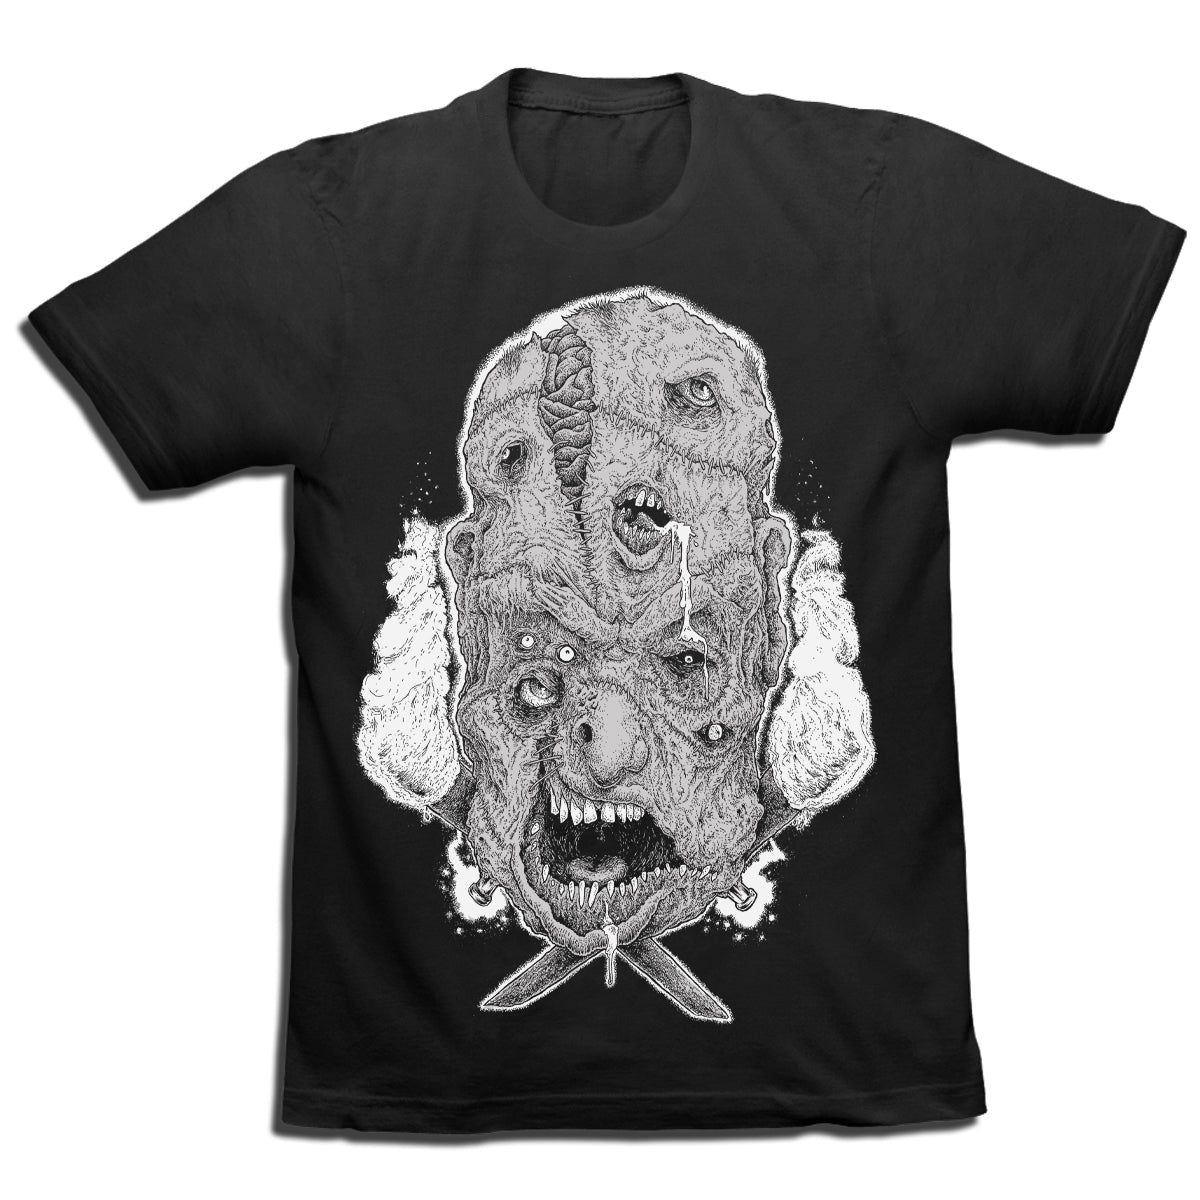 The Monster - Black T-Shirt